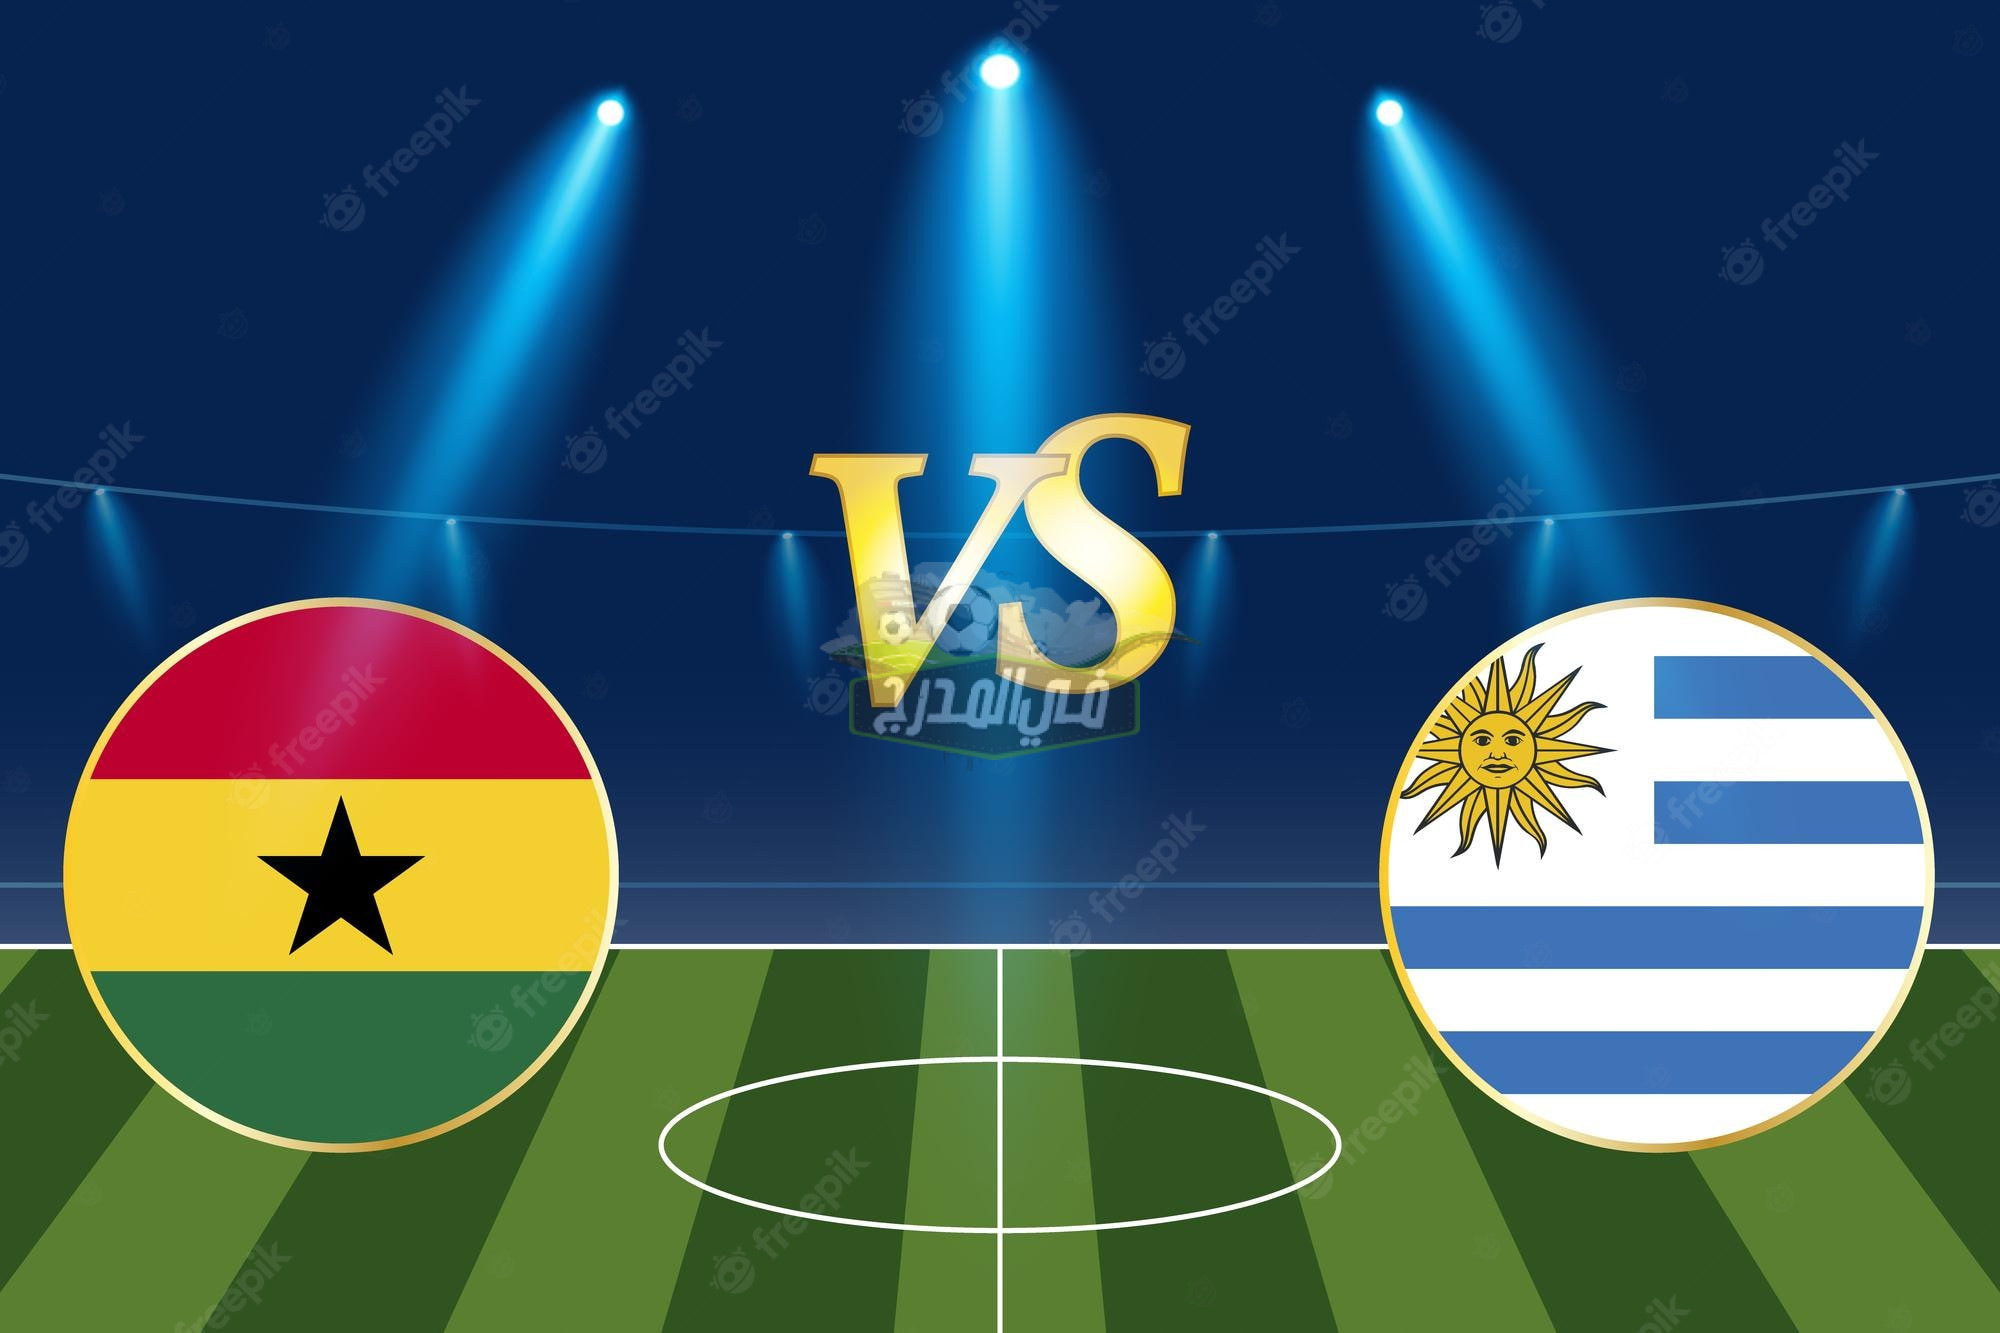 موعد مباراة غانا وأوروجواي Ghana vs Uruguay في كأس العالم 2022 والقنوات الناقلة لها